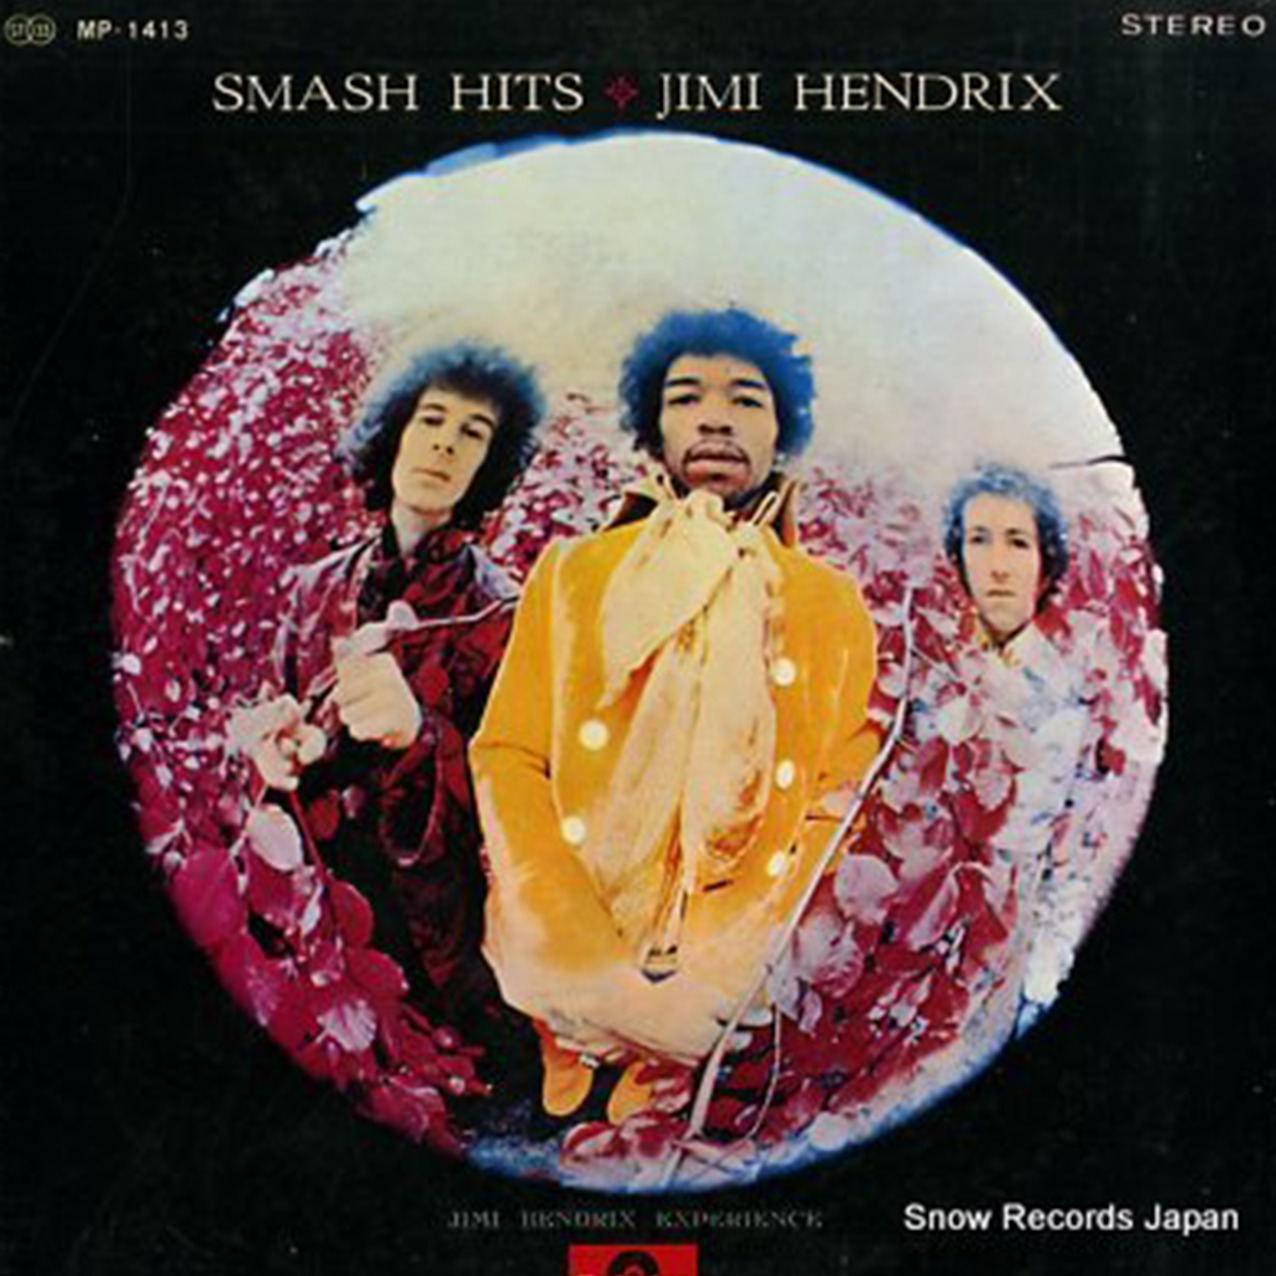 レコード買取専門店「TU-Field」では、ジミ・ヘンドリックス『スマッシュ・ヒッツ』のレコードを高価買取しております